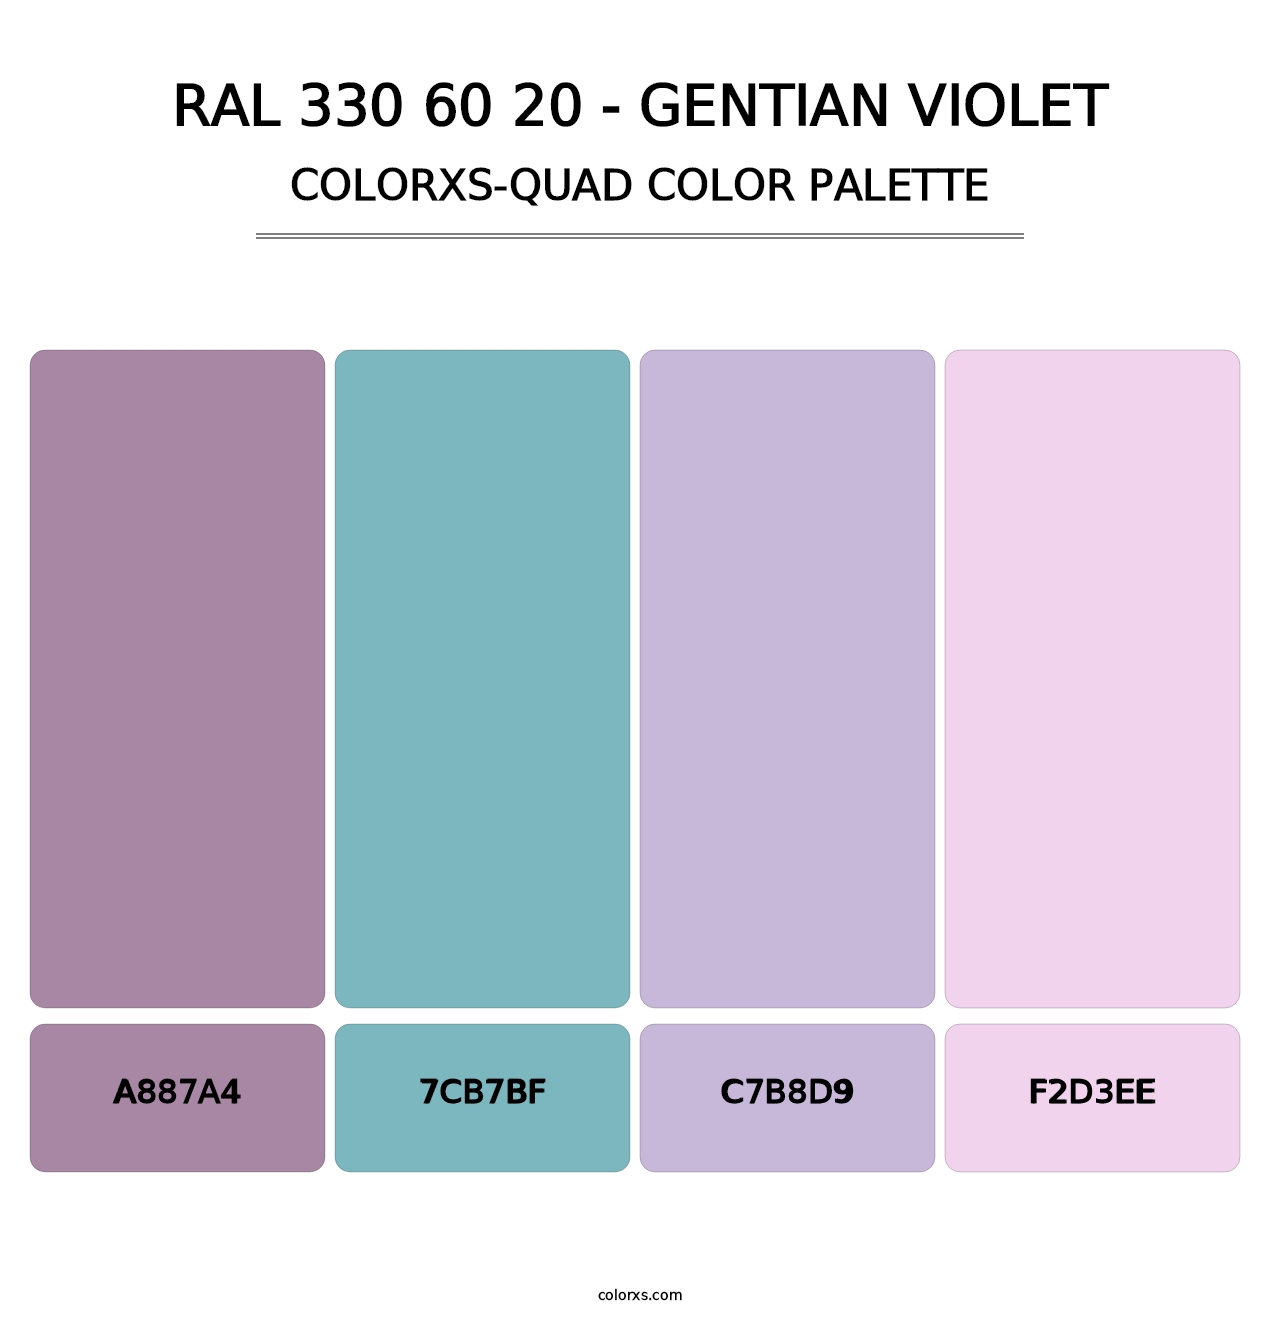 RAL 330 60 20 - Gentian Violet - Colorxs Quad Palette